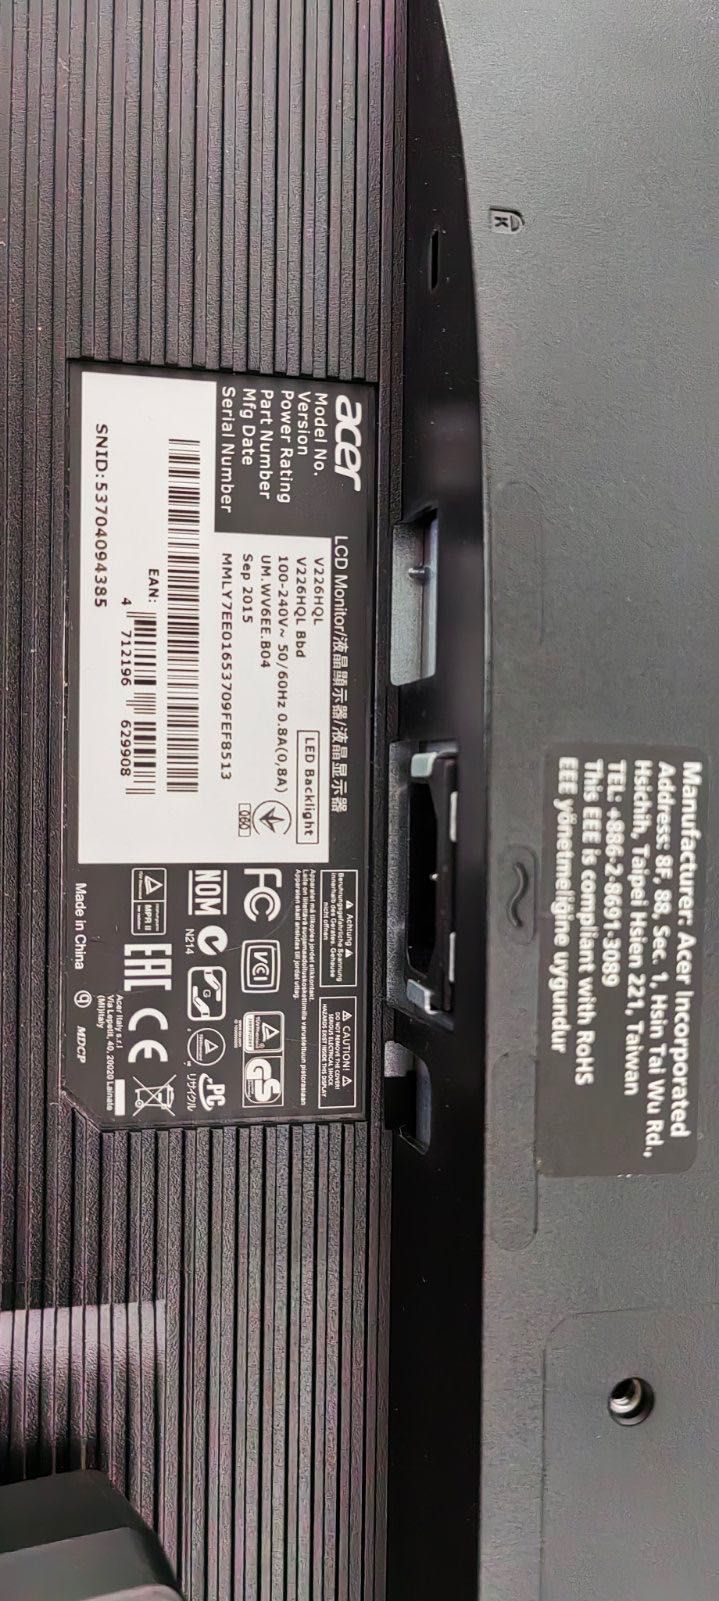 Монитор Acer V226HQL